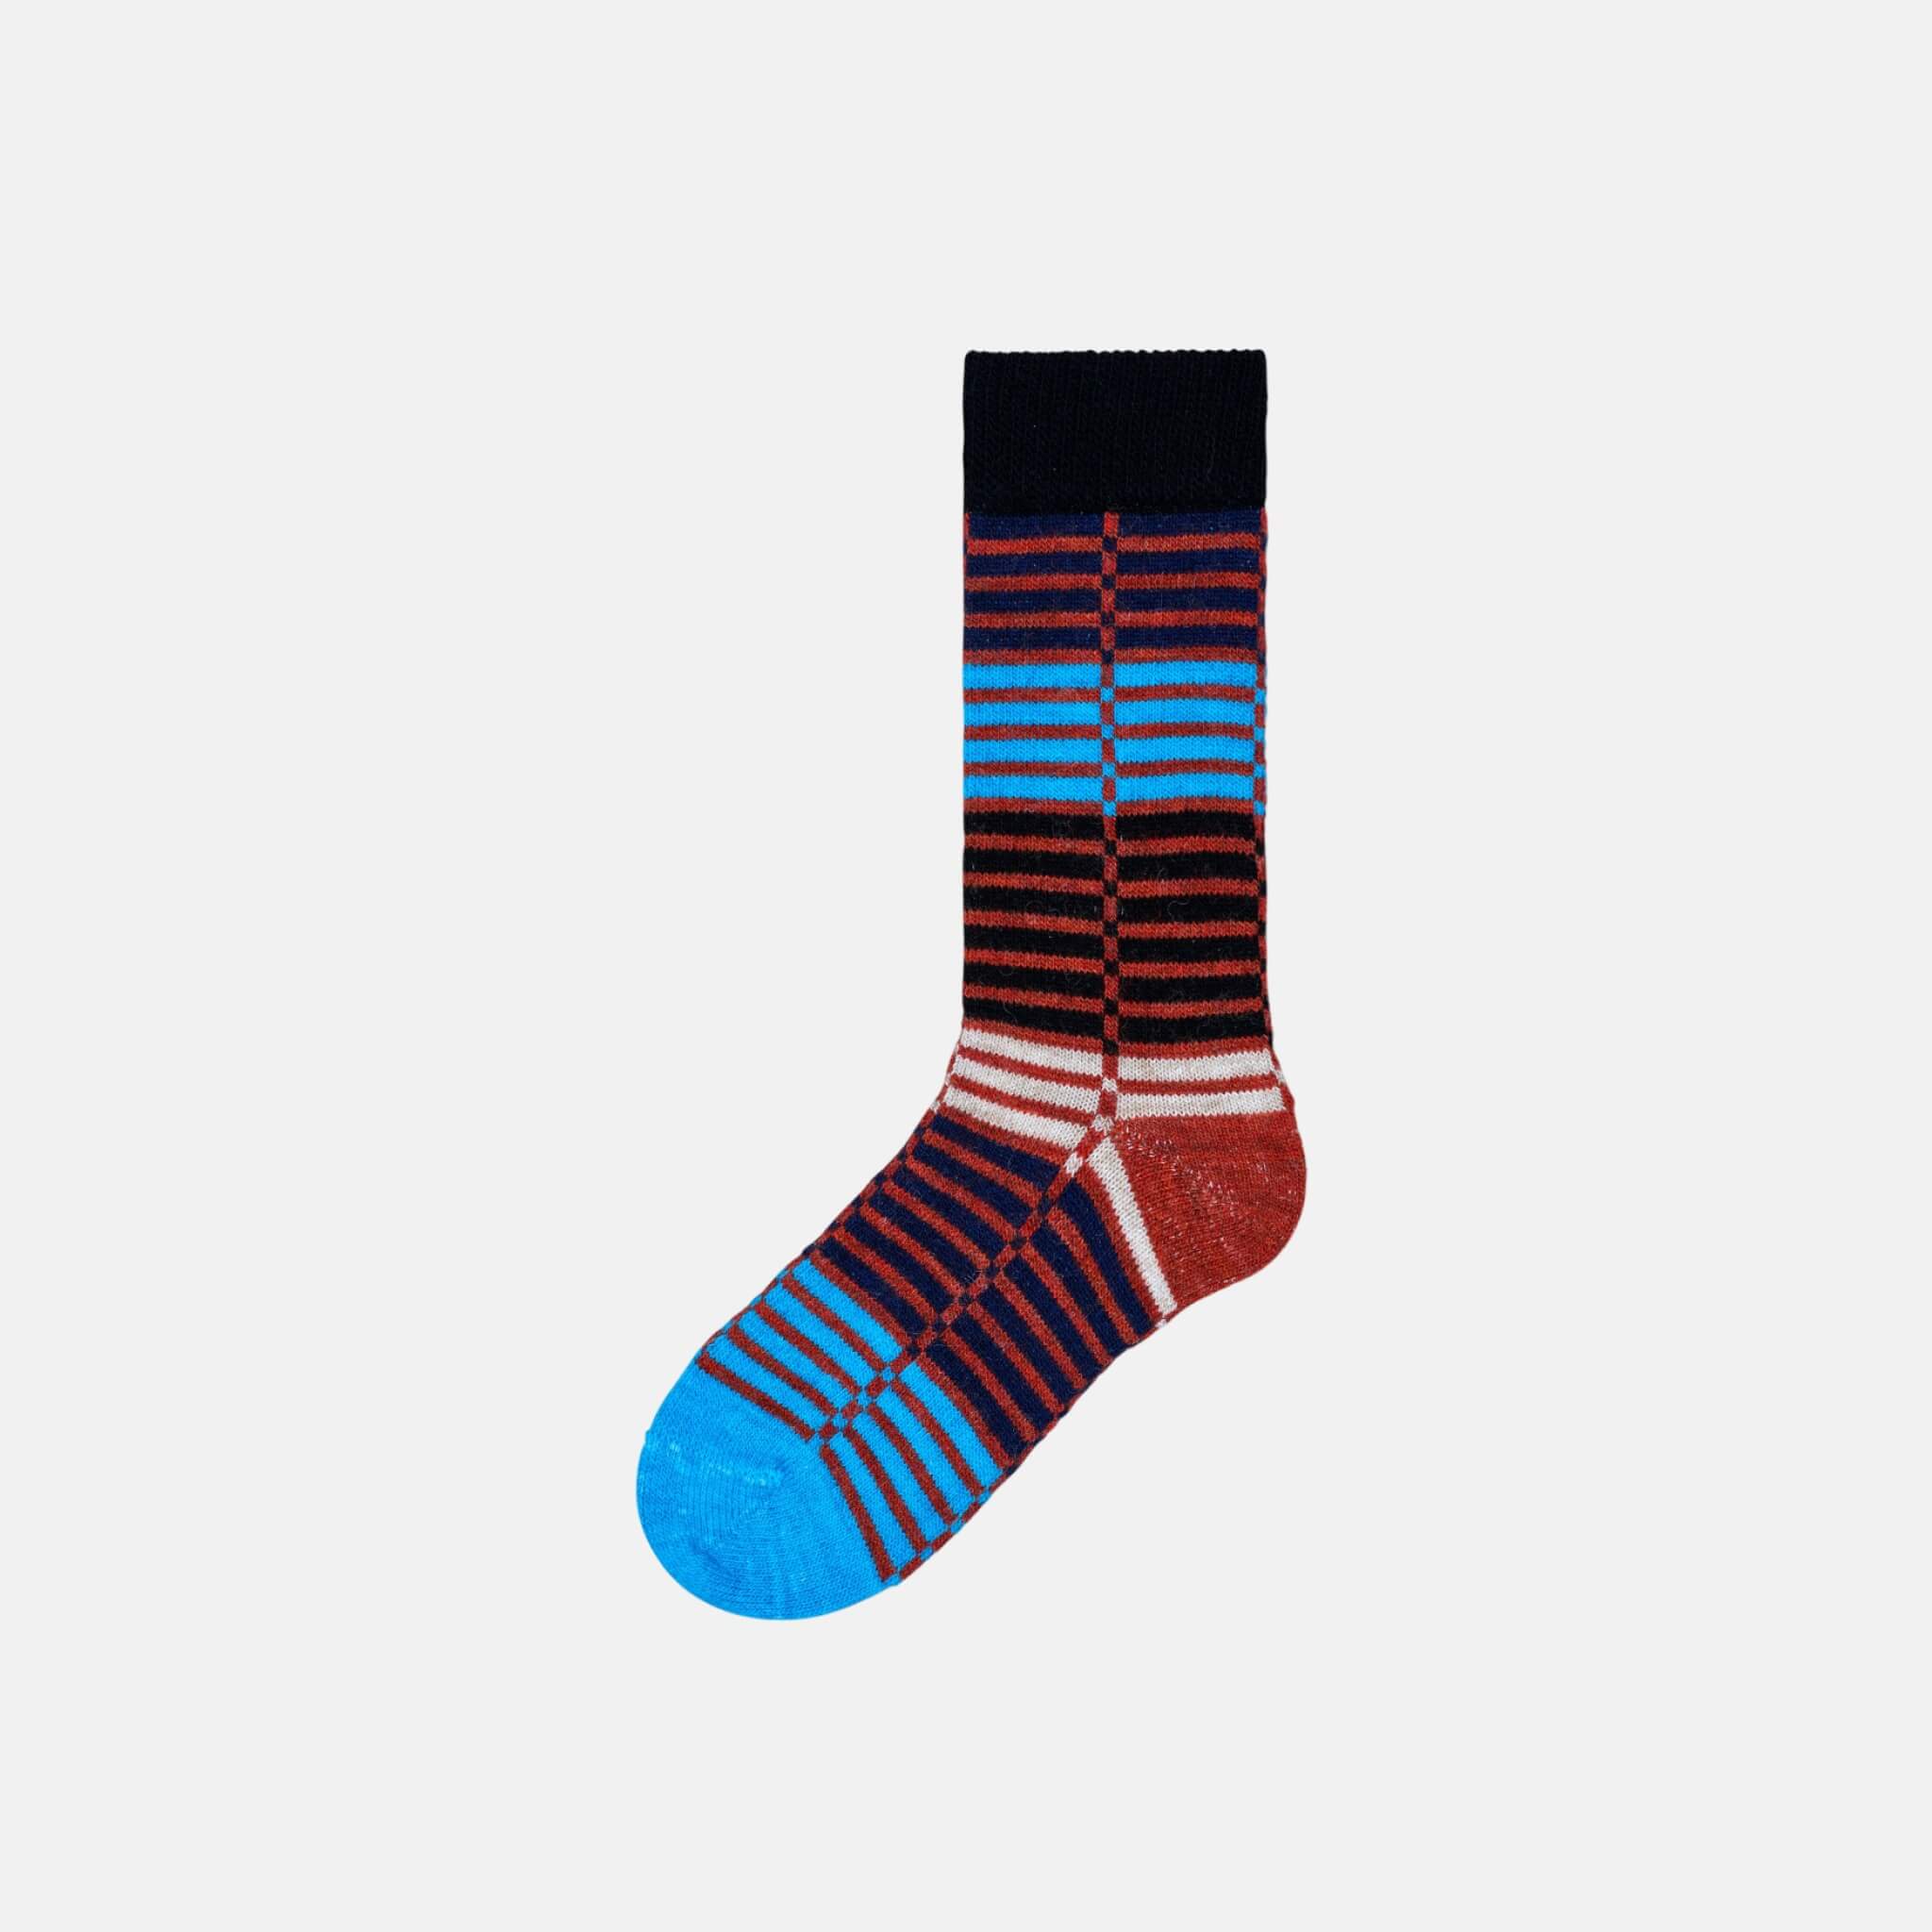 Dámske farebné (modré) ponožky Happy Socks Ellinor // kolekcia Hysteria